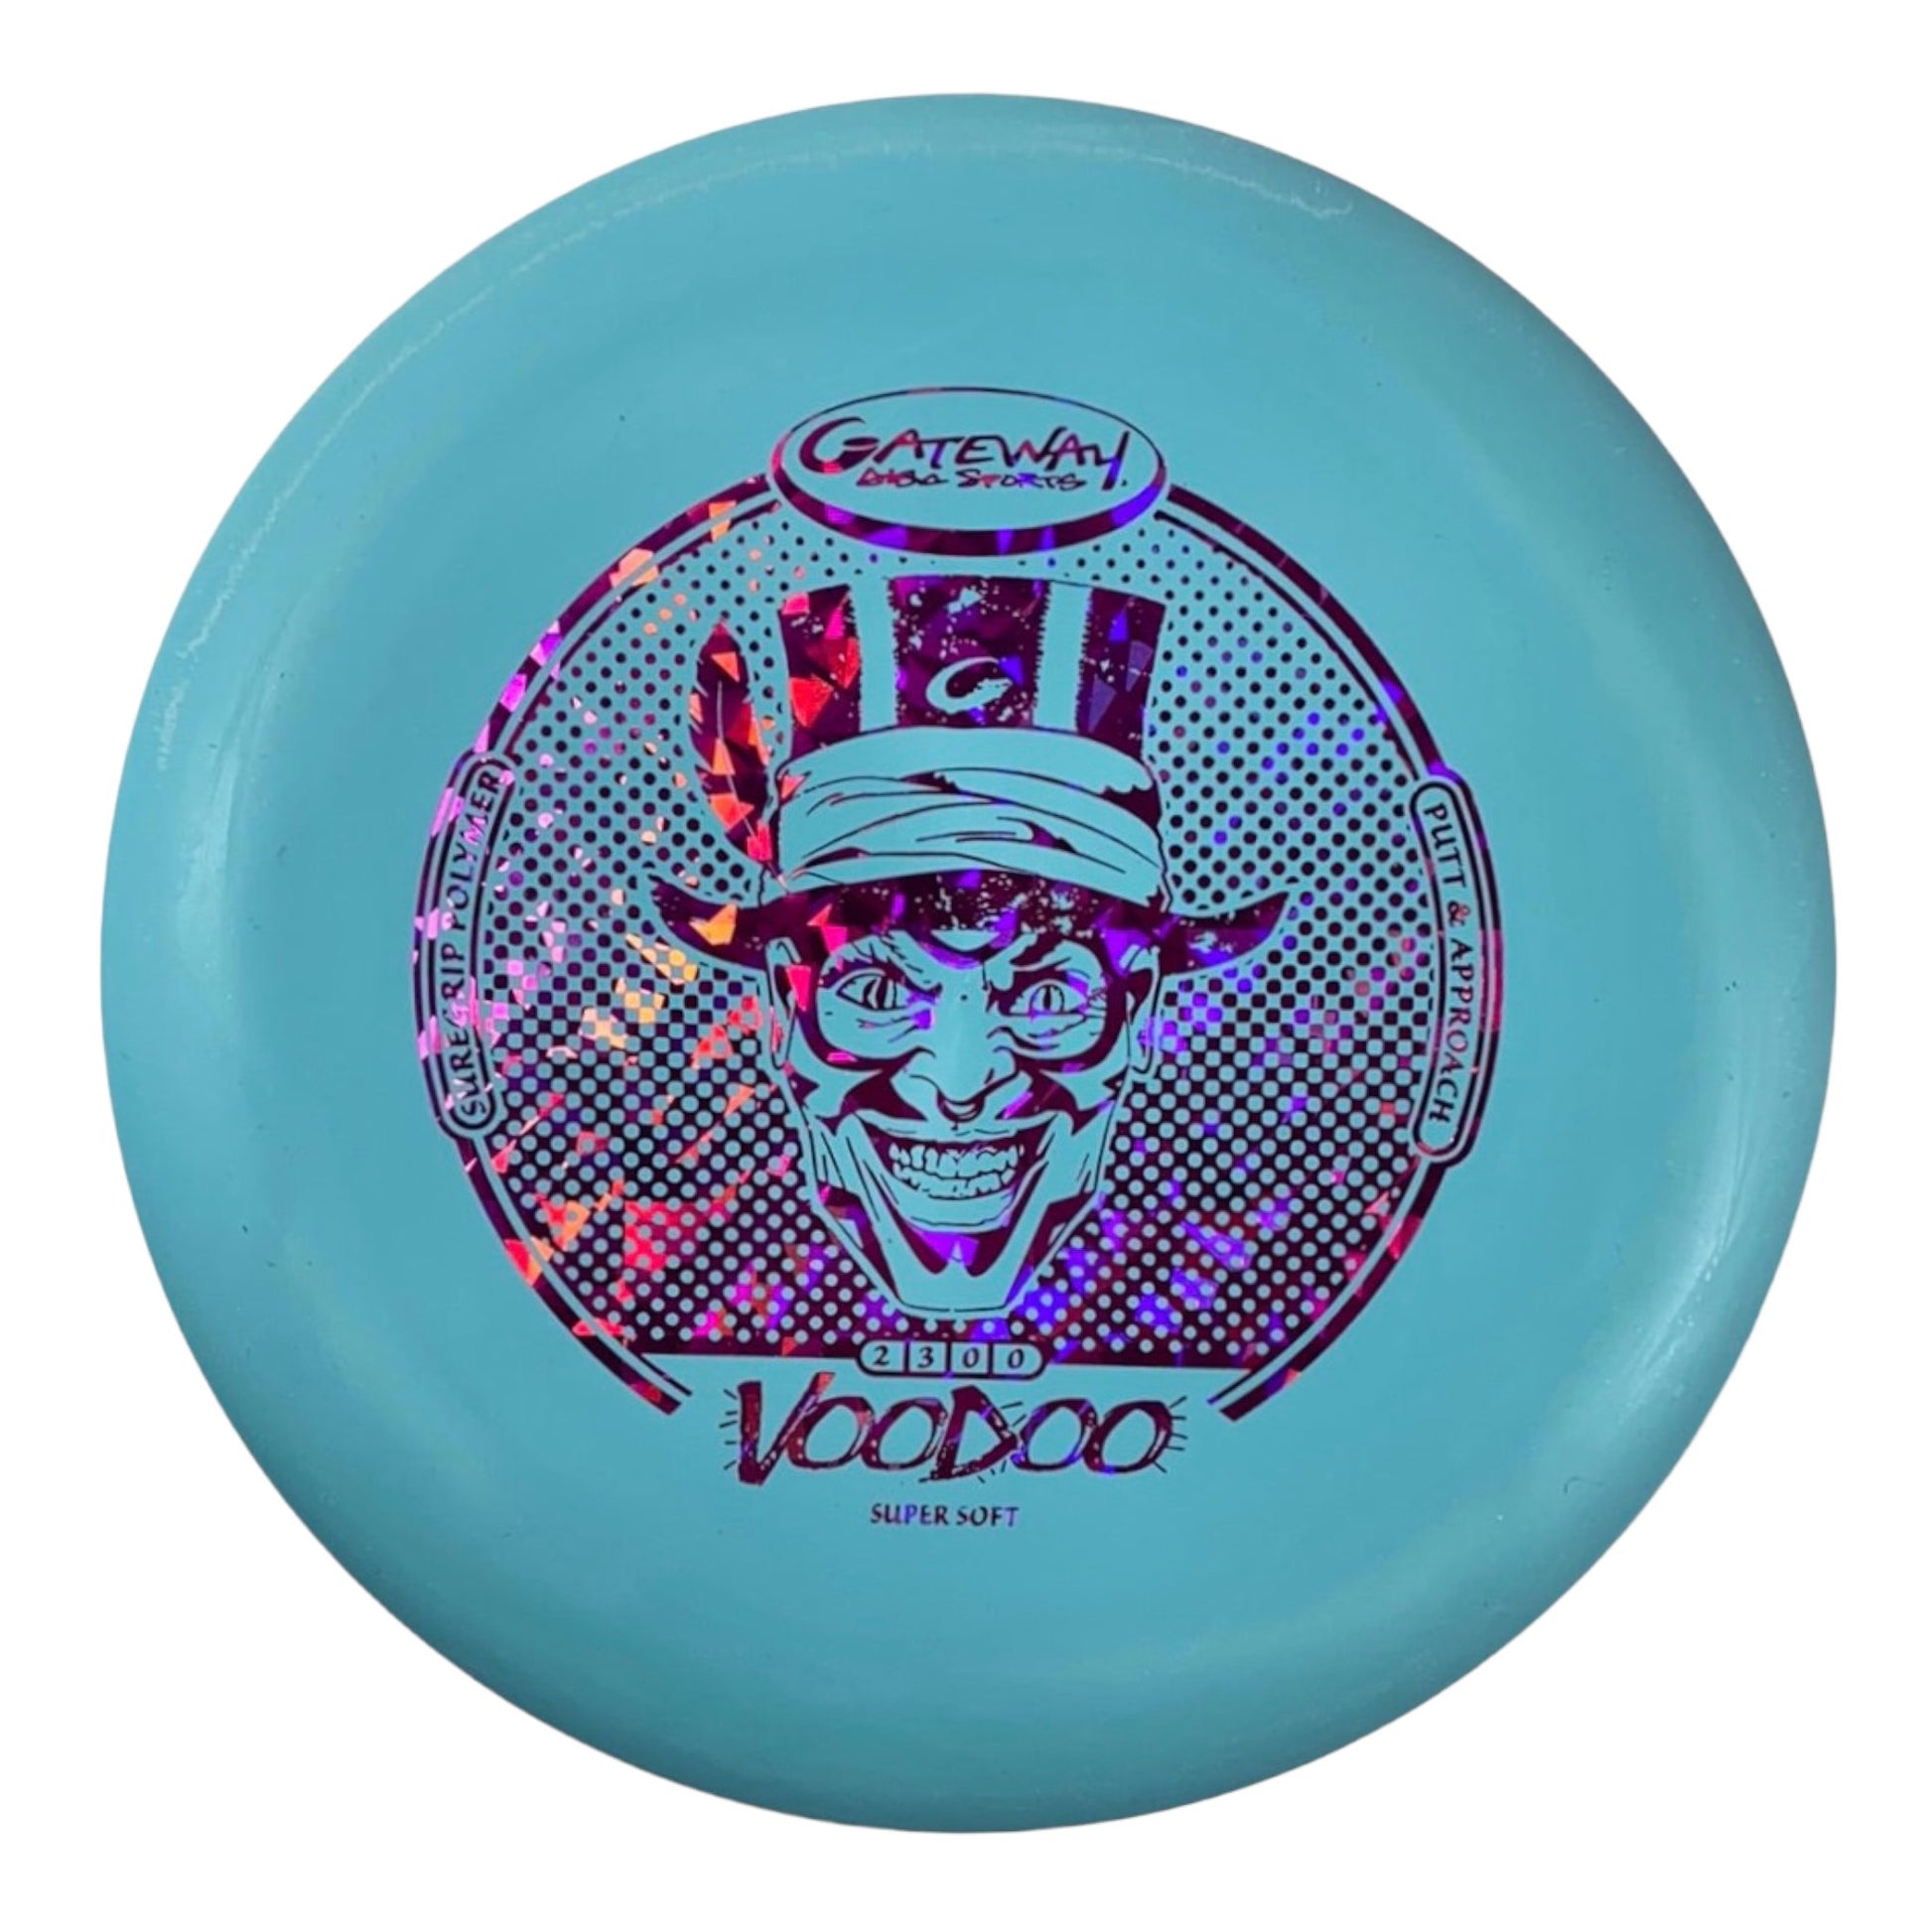 Gateway Disc Sports Voodoo | Super Soft (SS) | Blue/Pink 171-172g Disc Golf